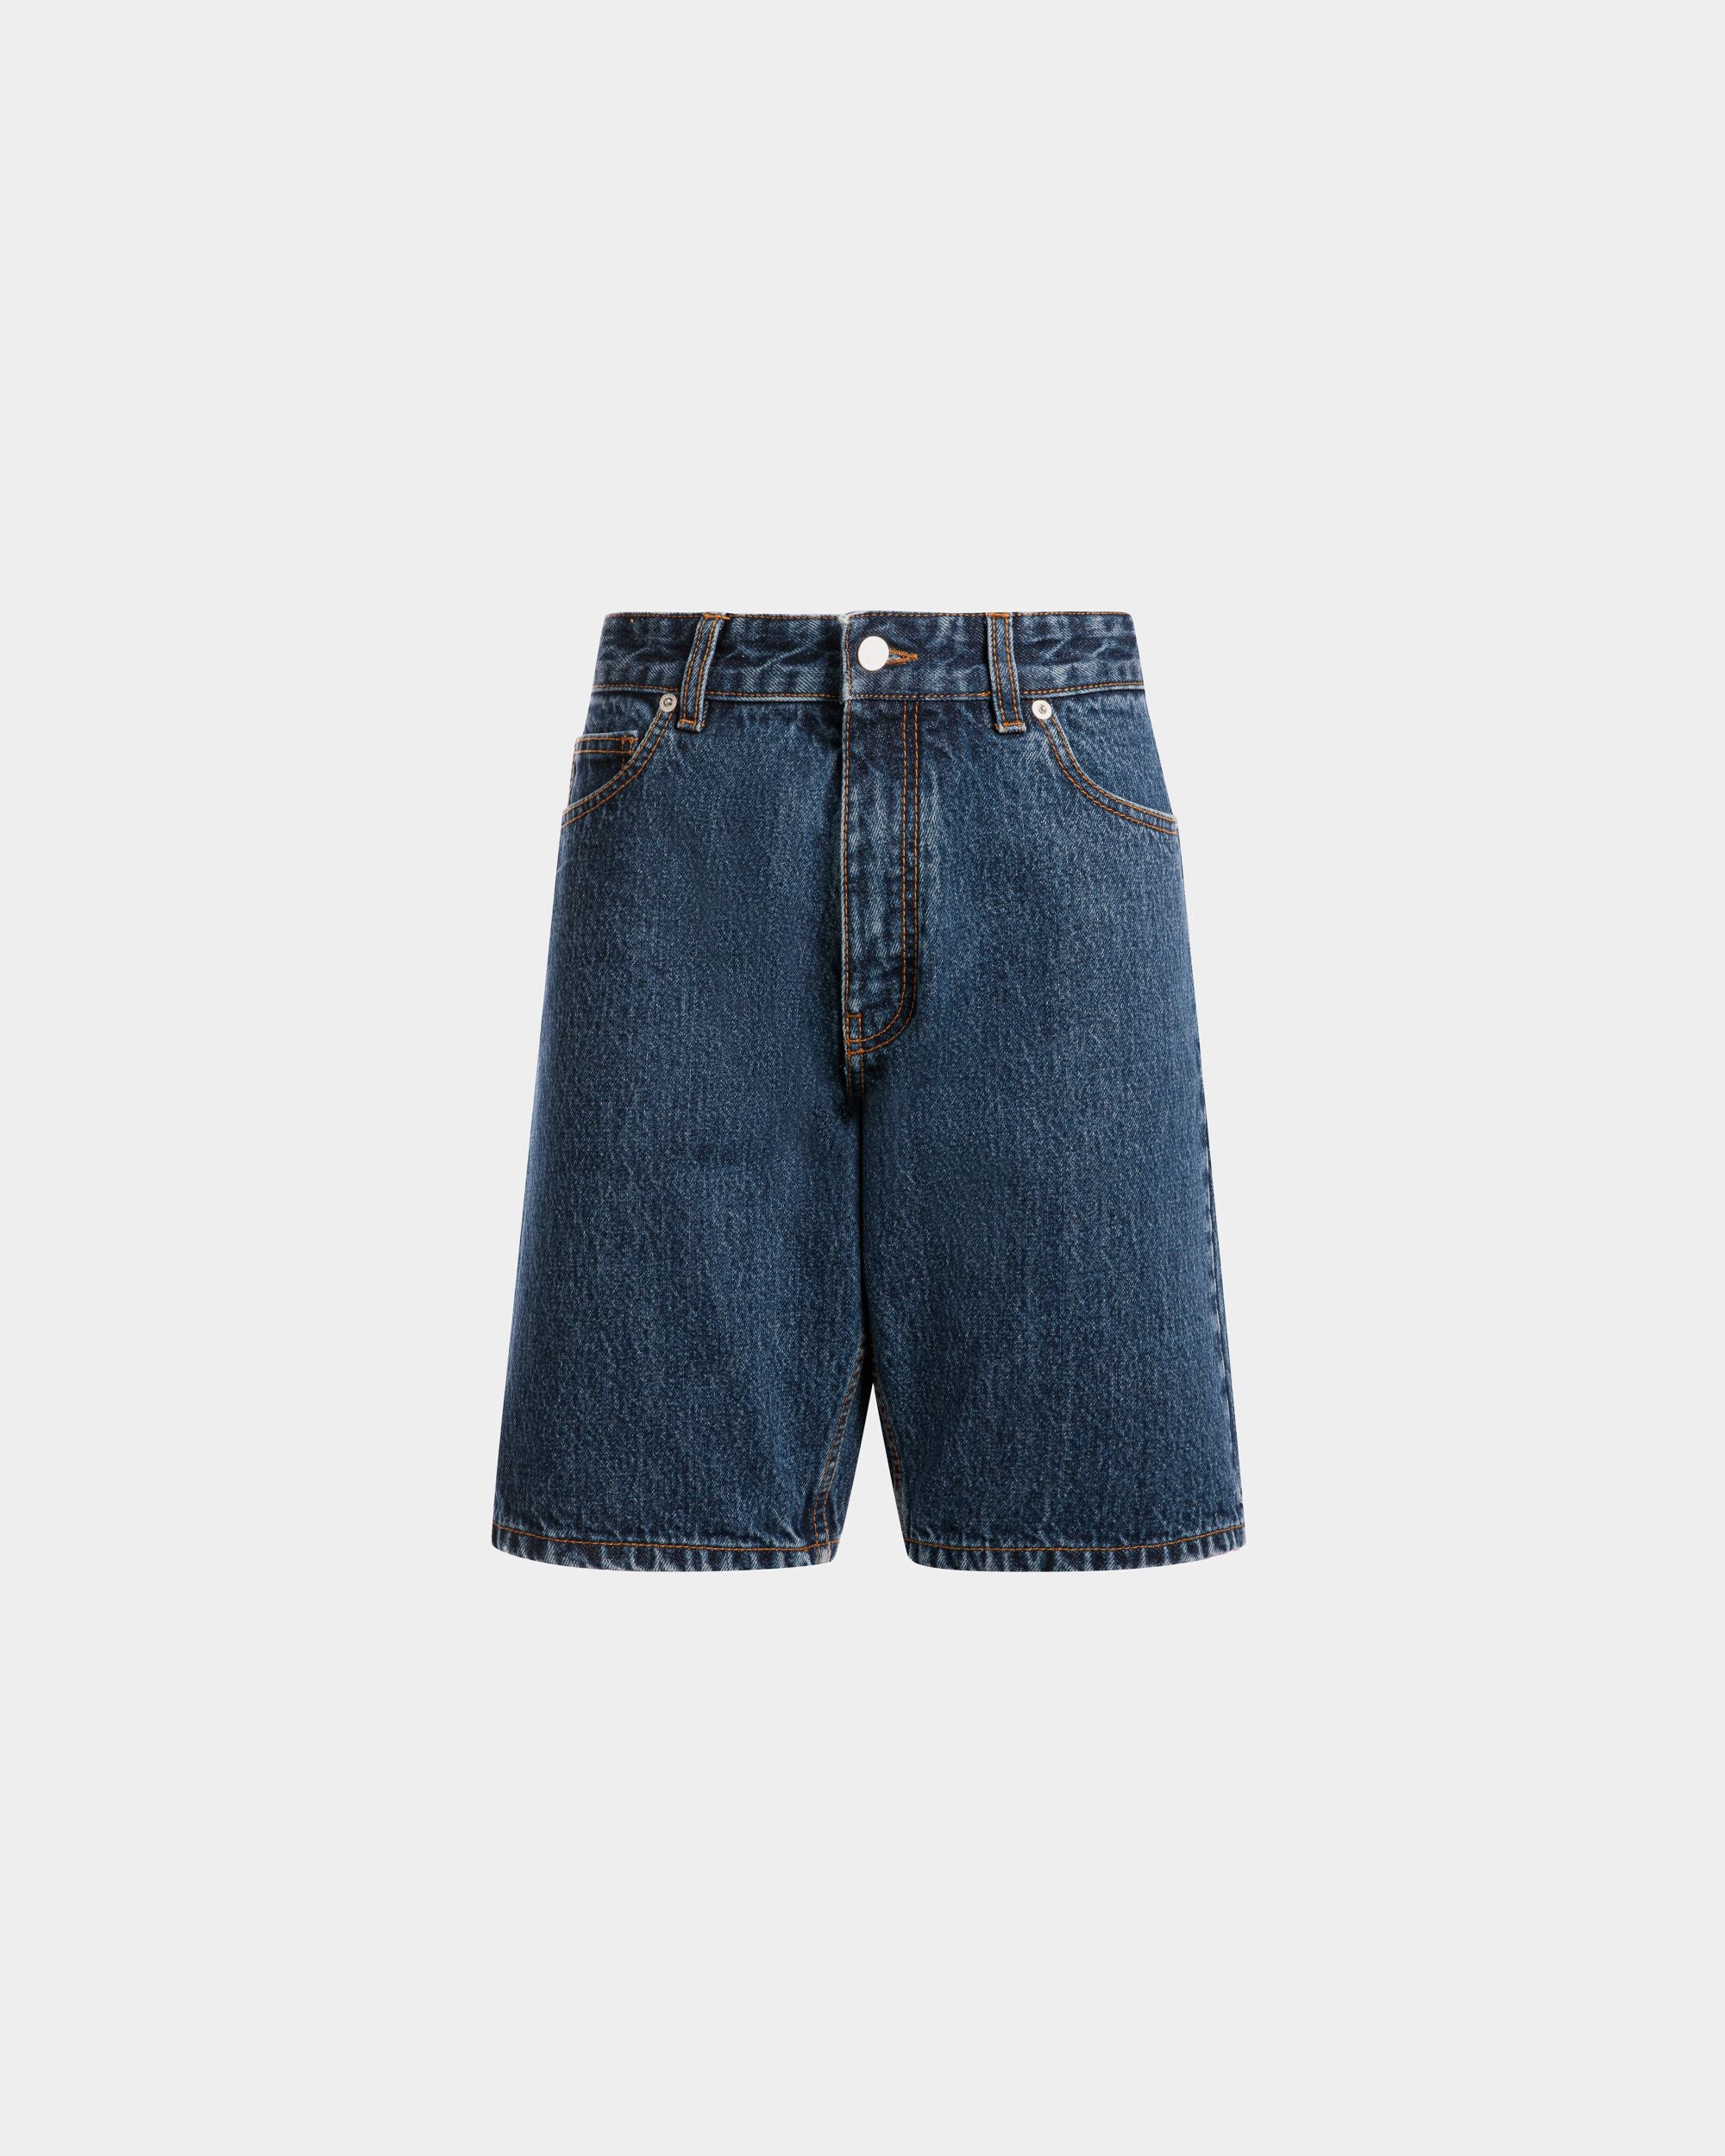 Jeanshose für Herren aus Baumwolle in Medium Blue | Bally | Still Life Vorderseite